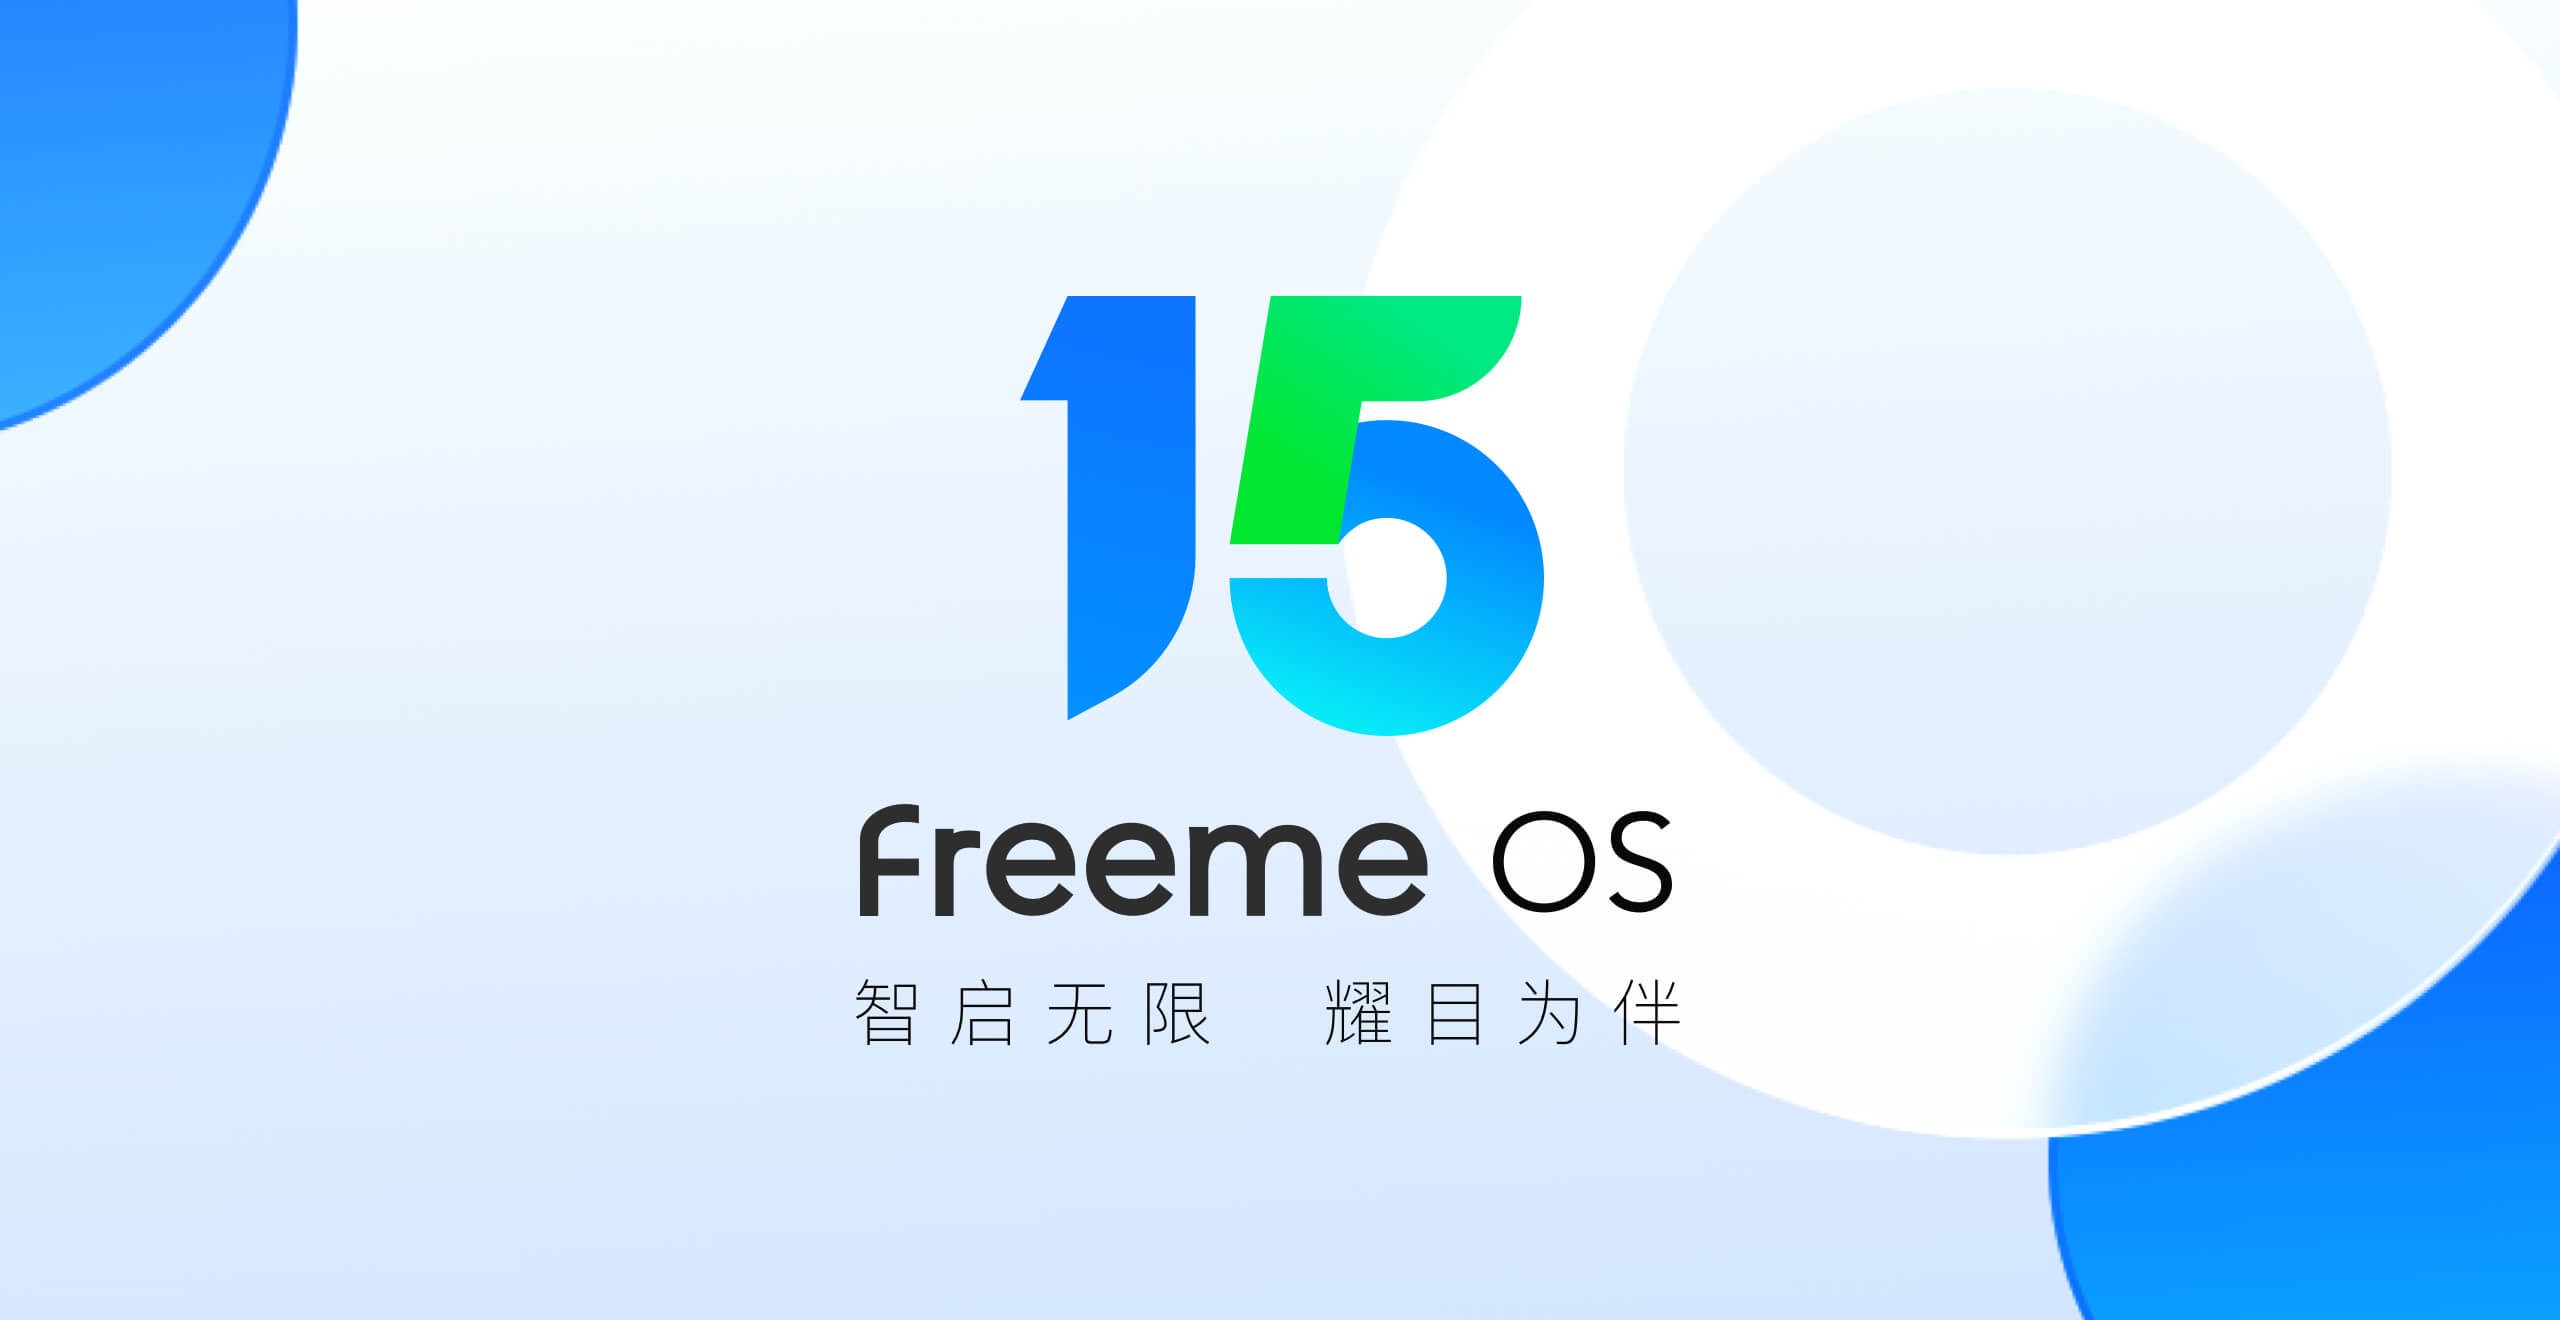 【产品新讯】卓易Freeme OS 15.0即将上线|智启无限 耀目为伴